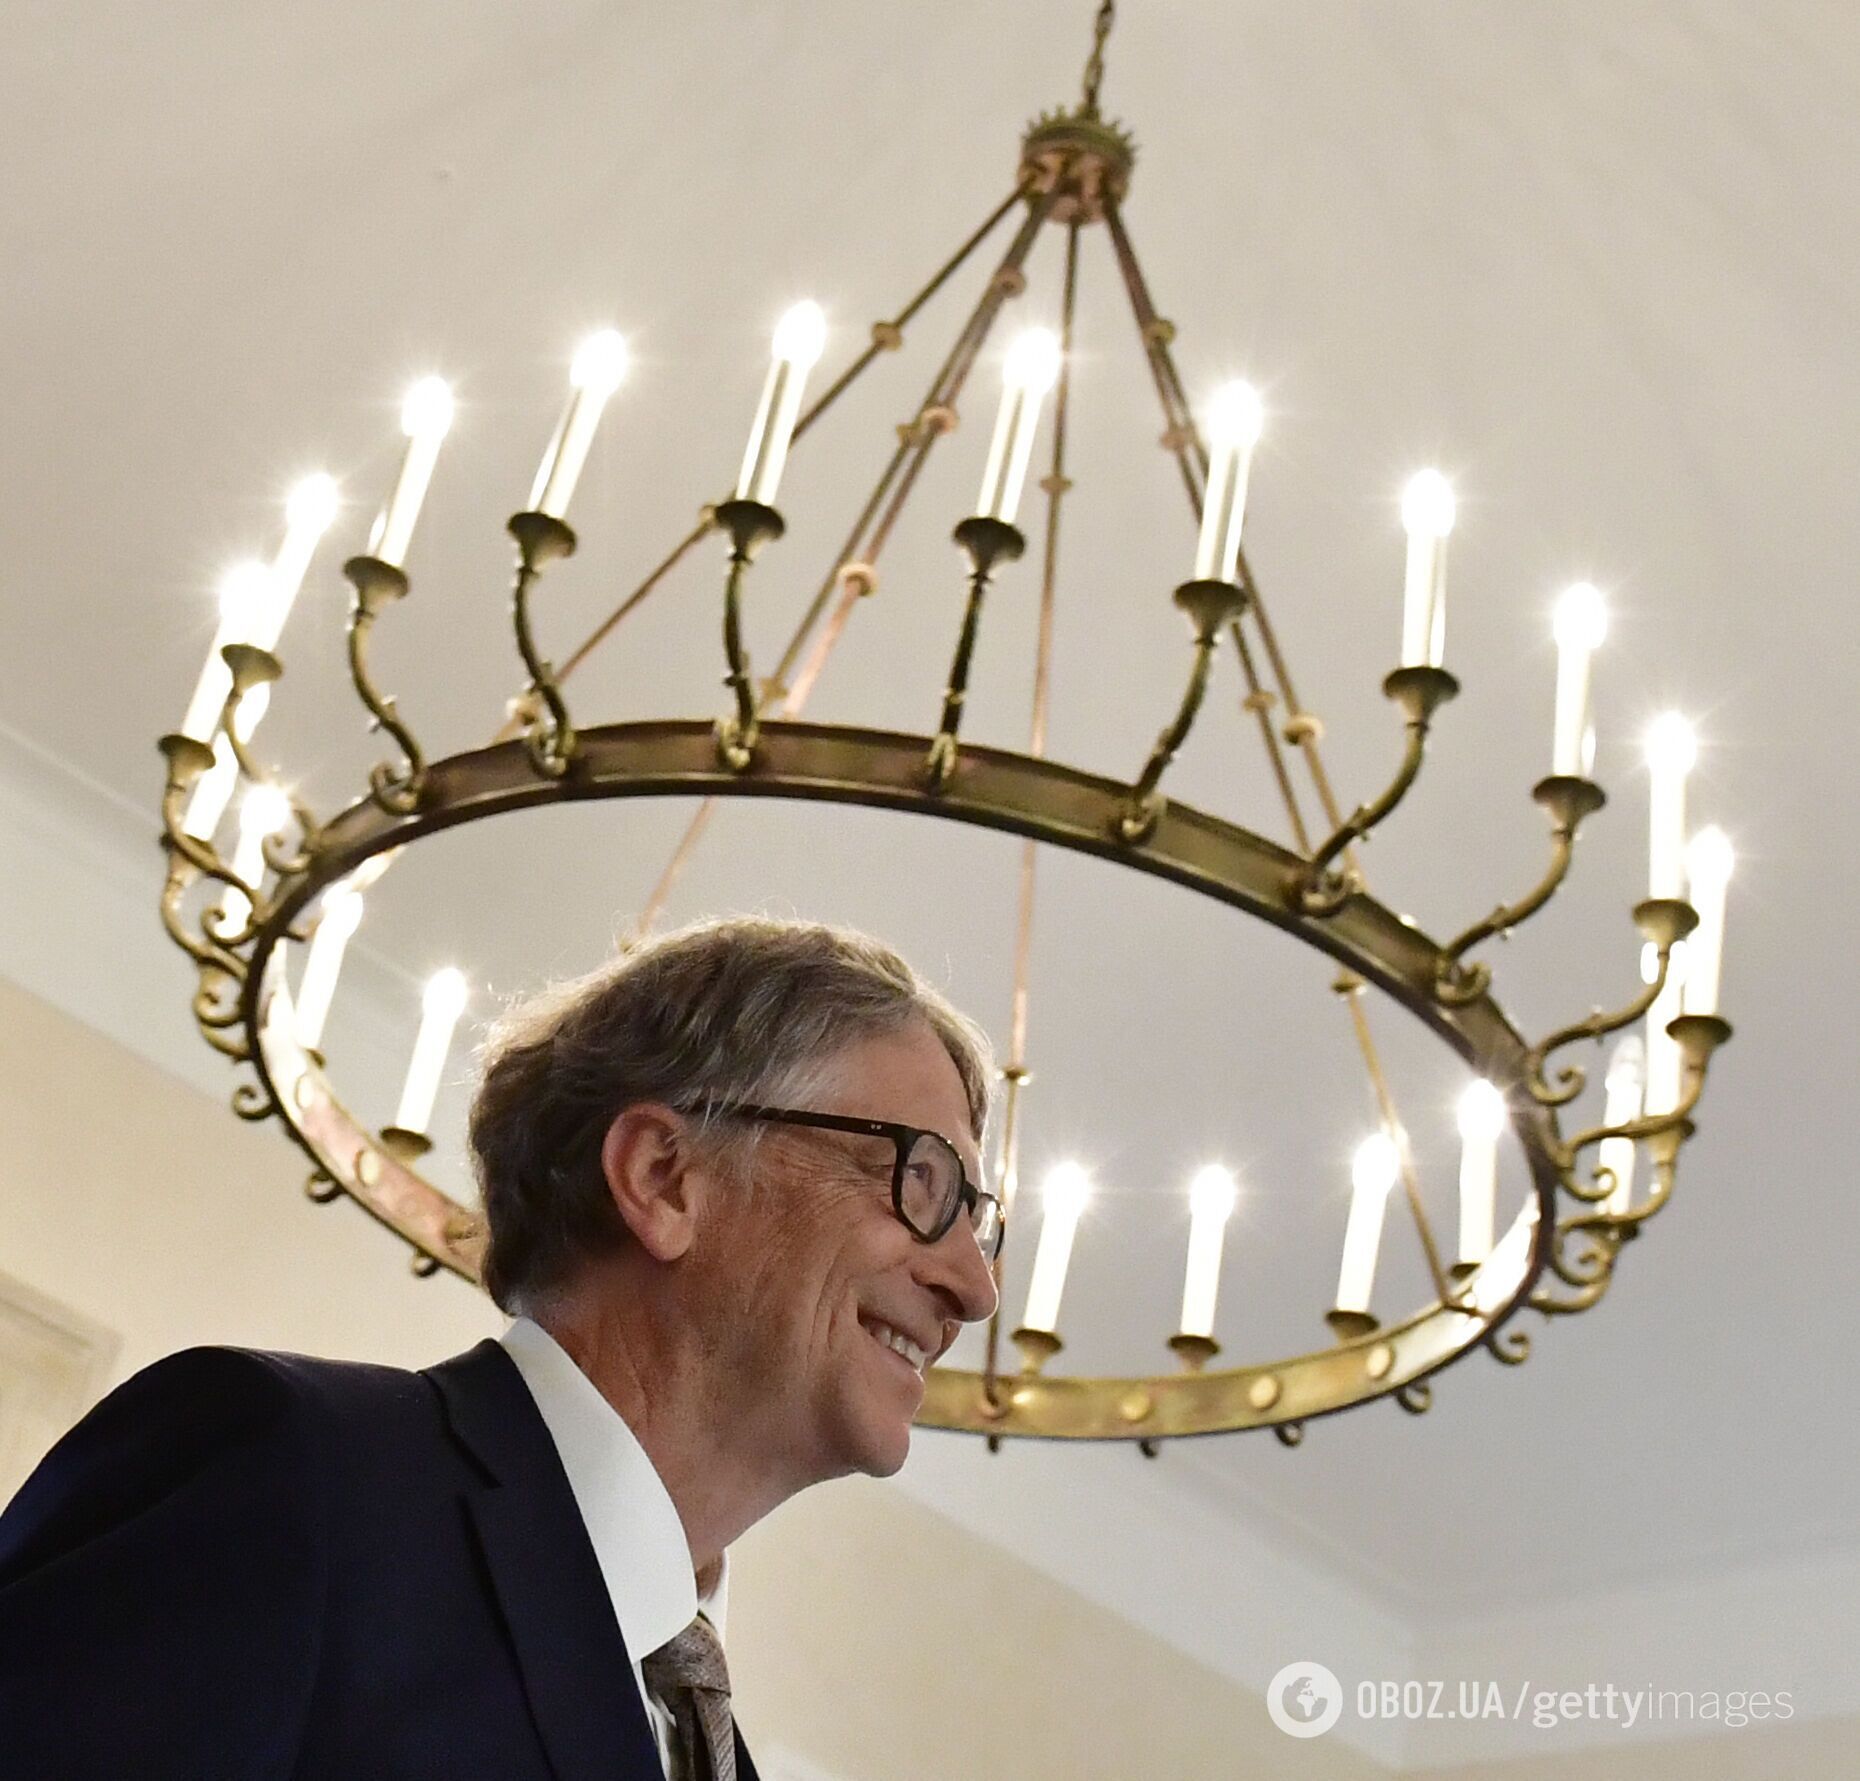 Билл Гейтс - сооснователь Microsoft, который долгие годы был самым богатым человеком в мире